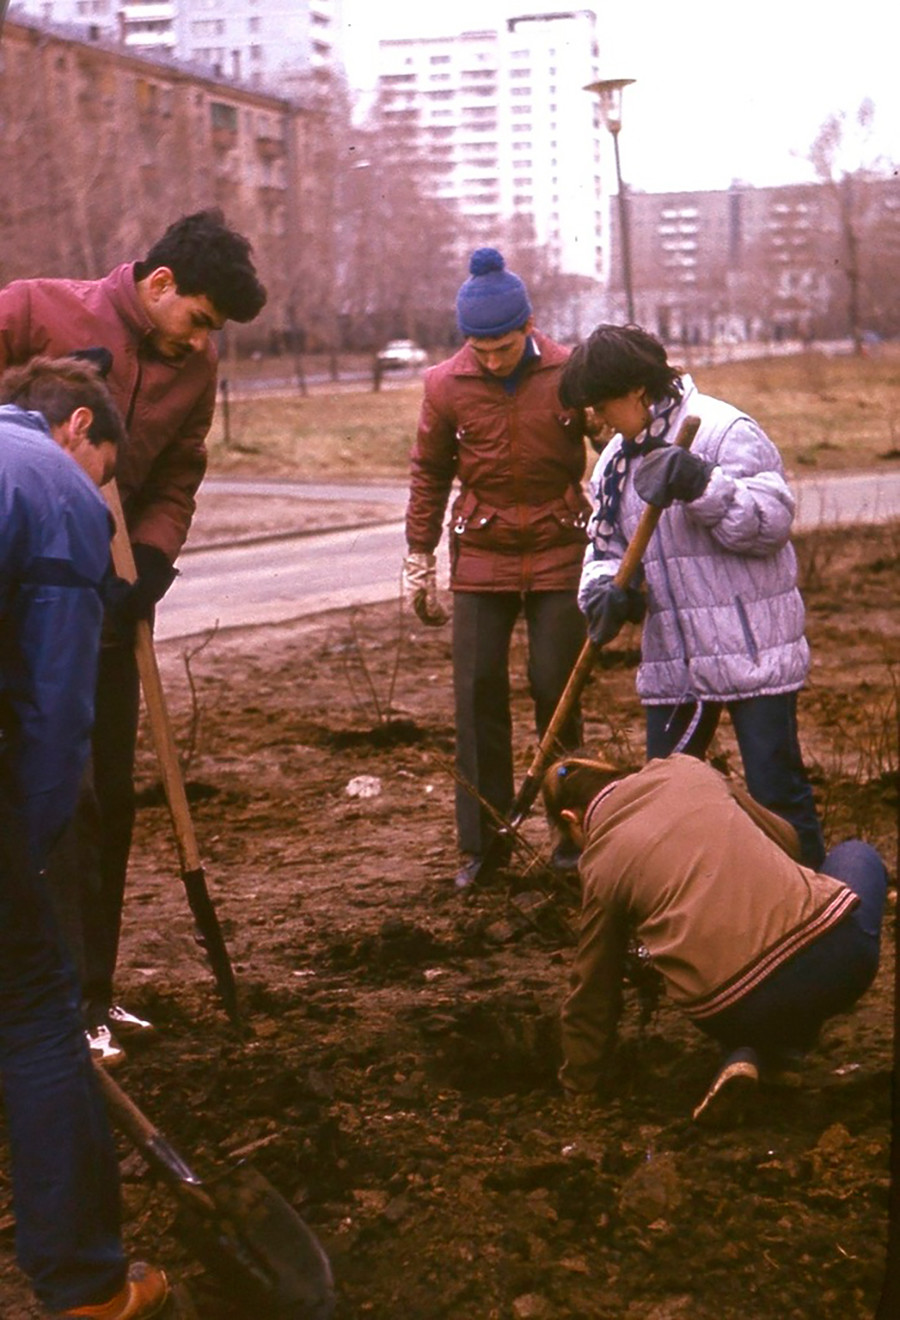 Étudiants de l’Université d’État de Moscou plantant des arbres près de leur résidence universitaire, 1984

